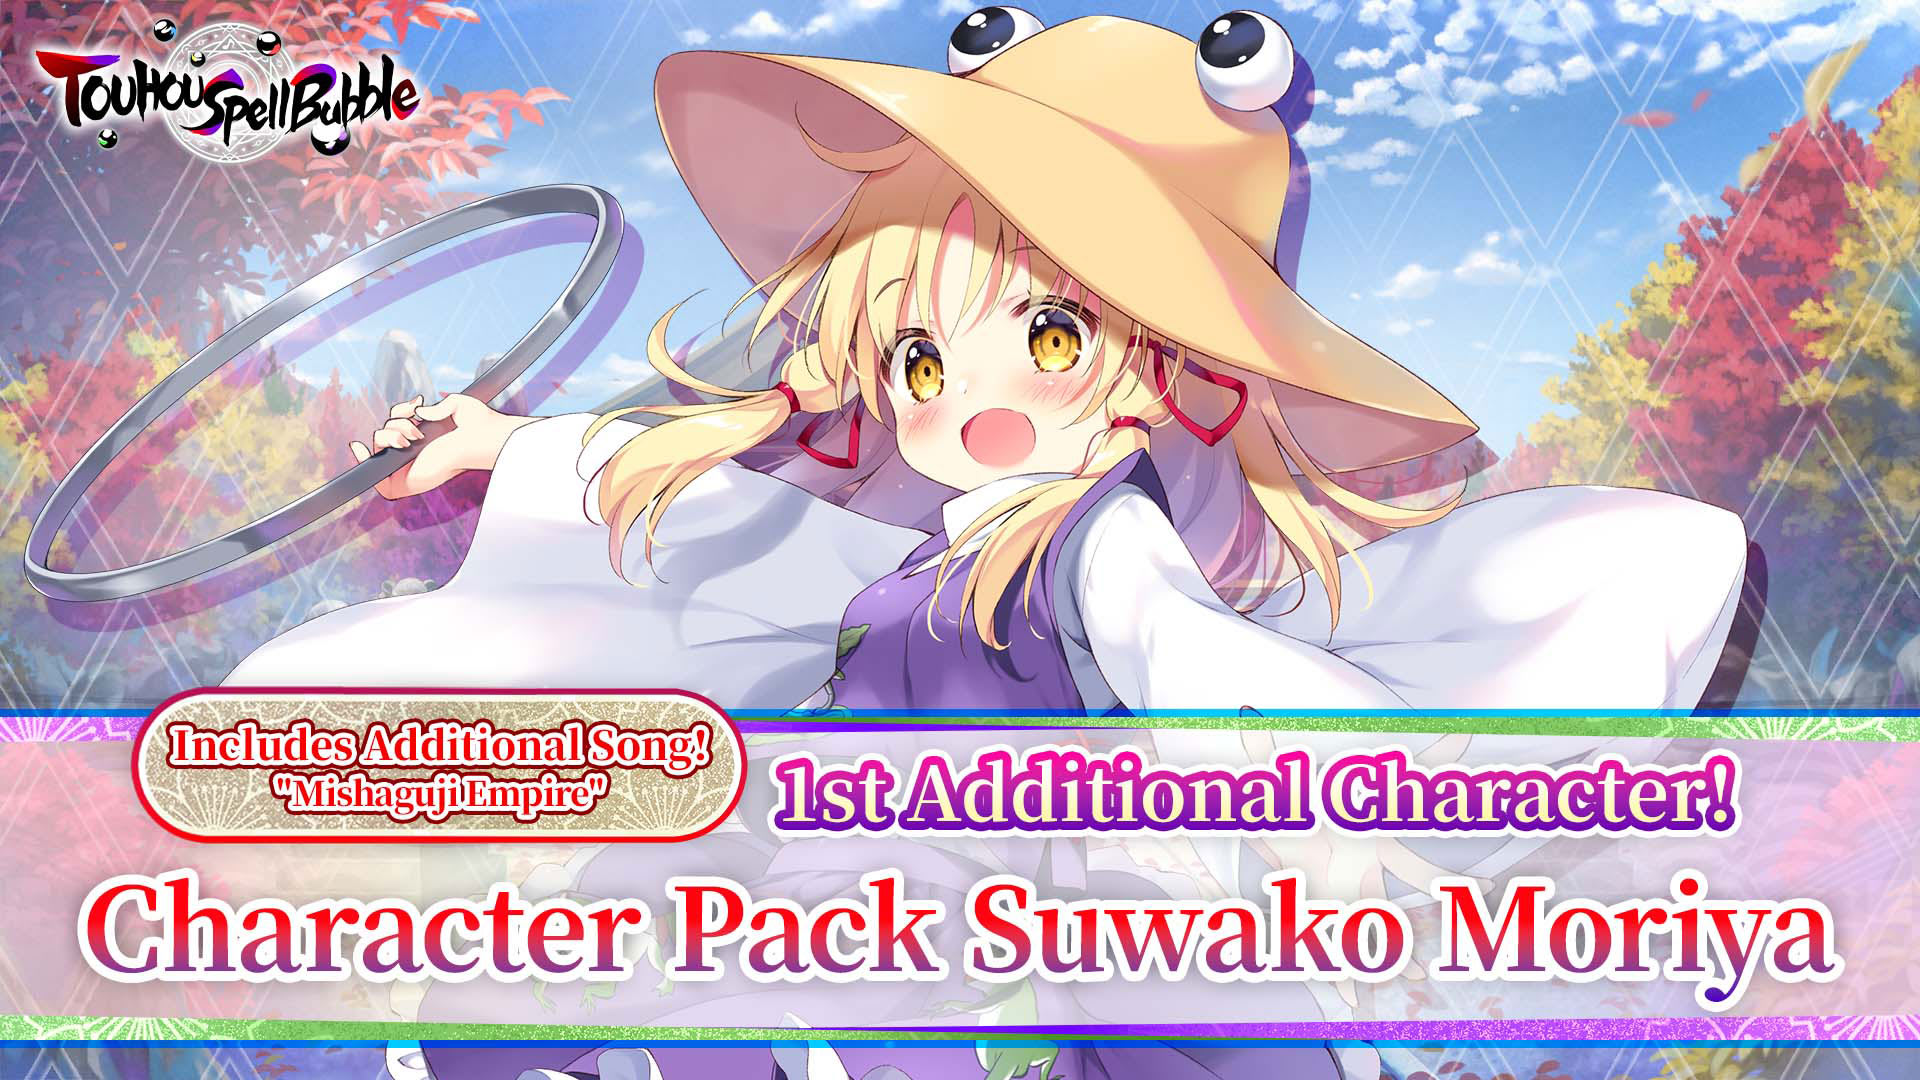 Character Pack Suwako Moriya